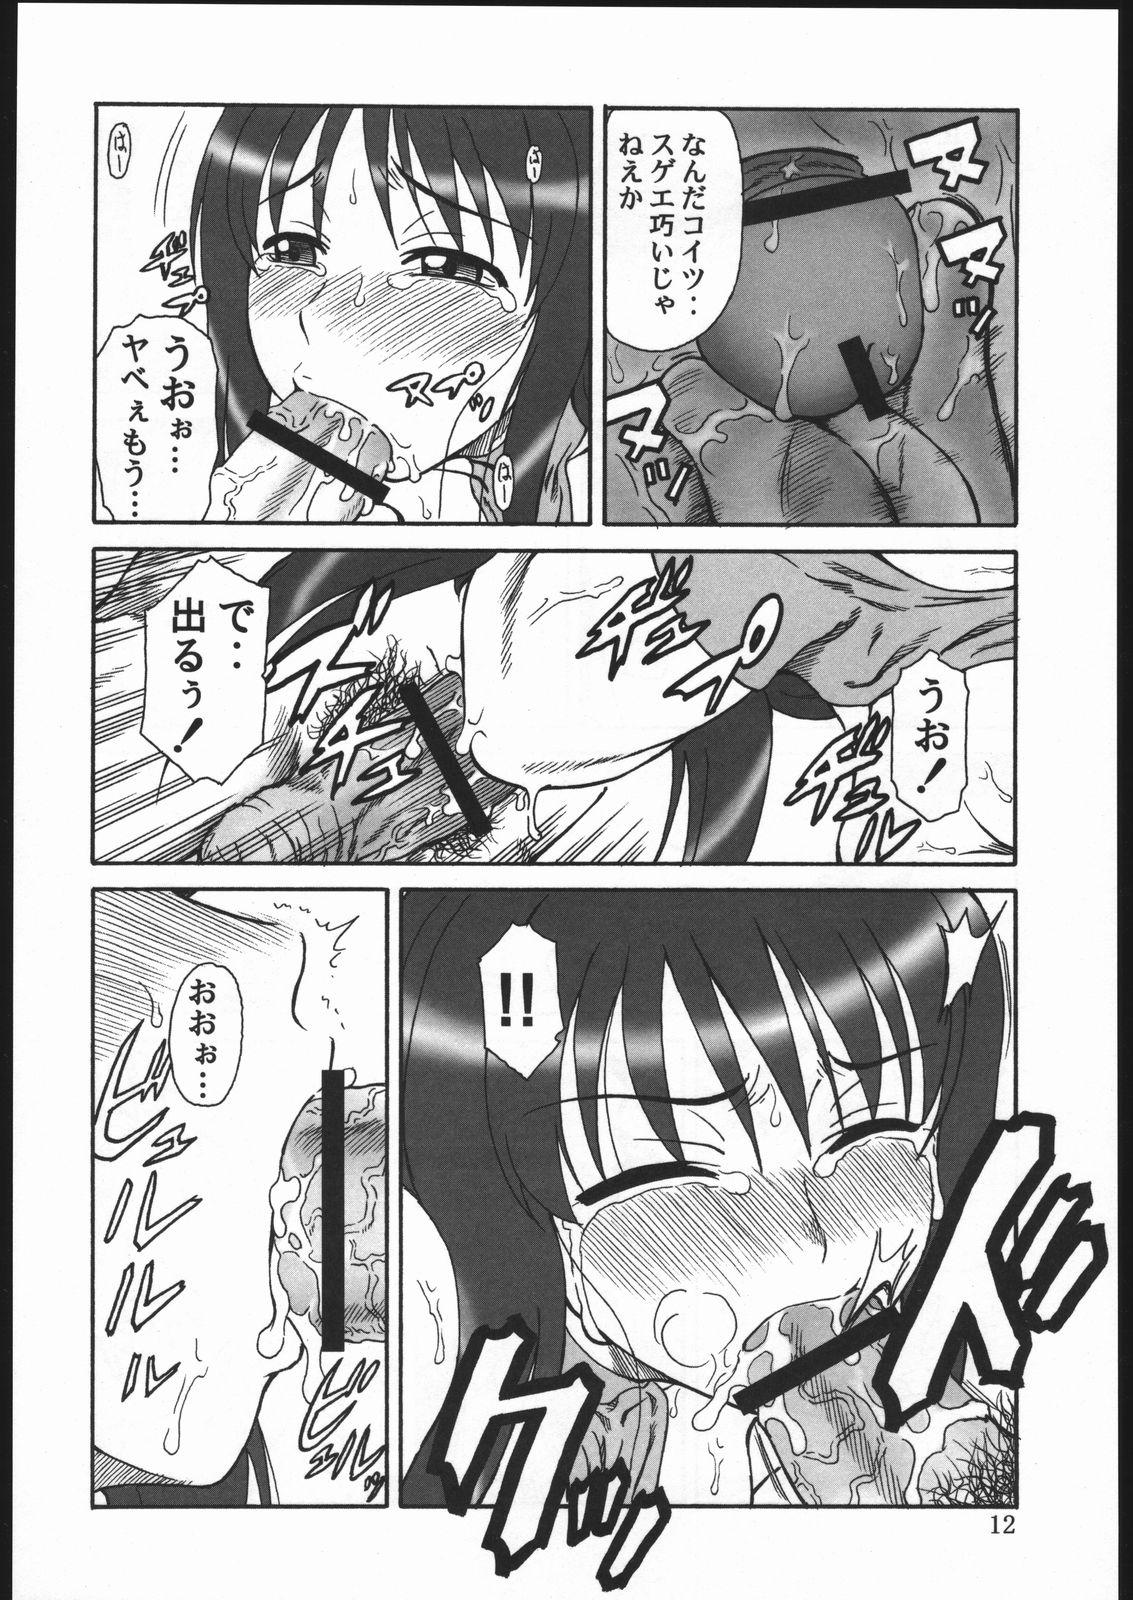 Bunduda Gyokusai Kakugo 6 Kamikaze Attack!! - Kaleido star Roludo - Page 11